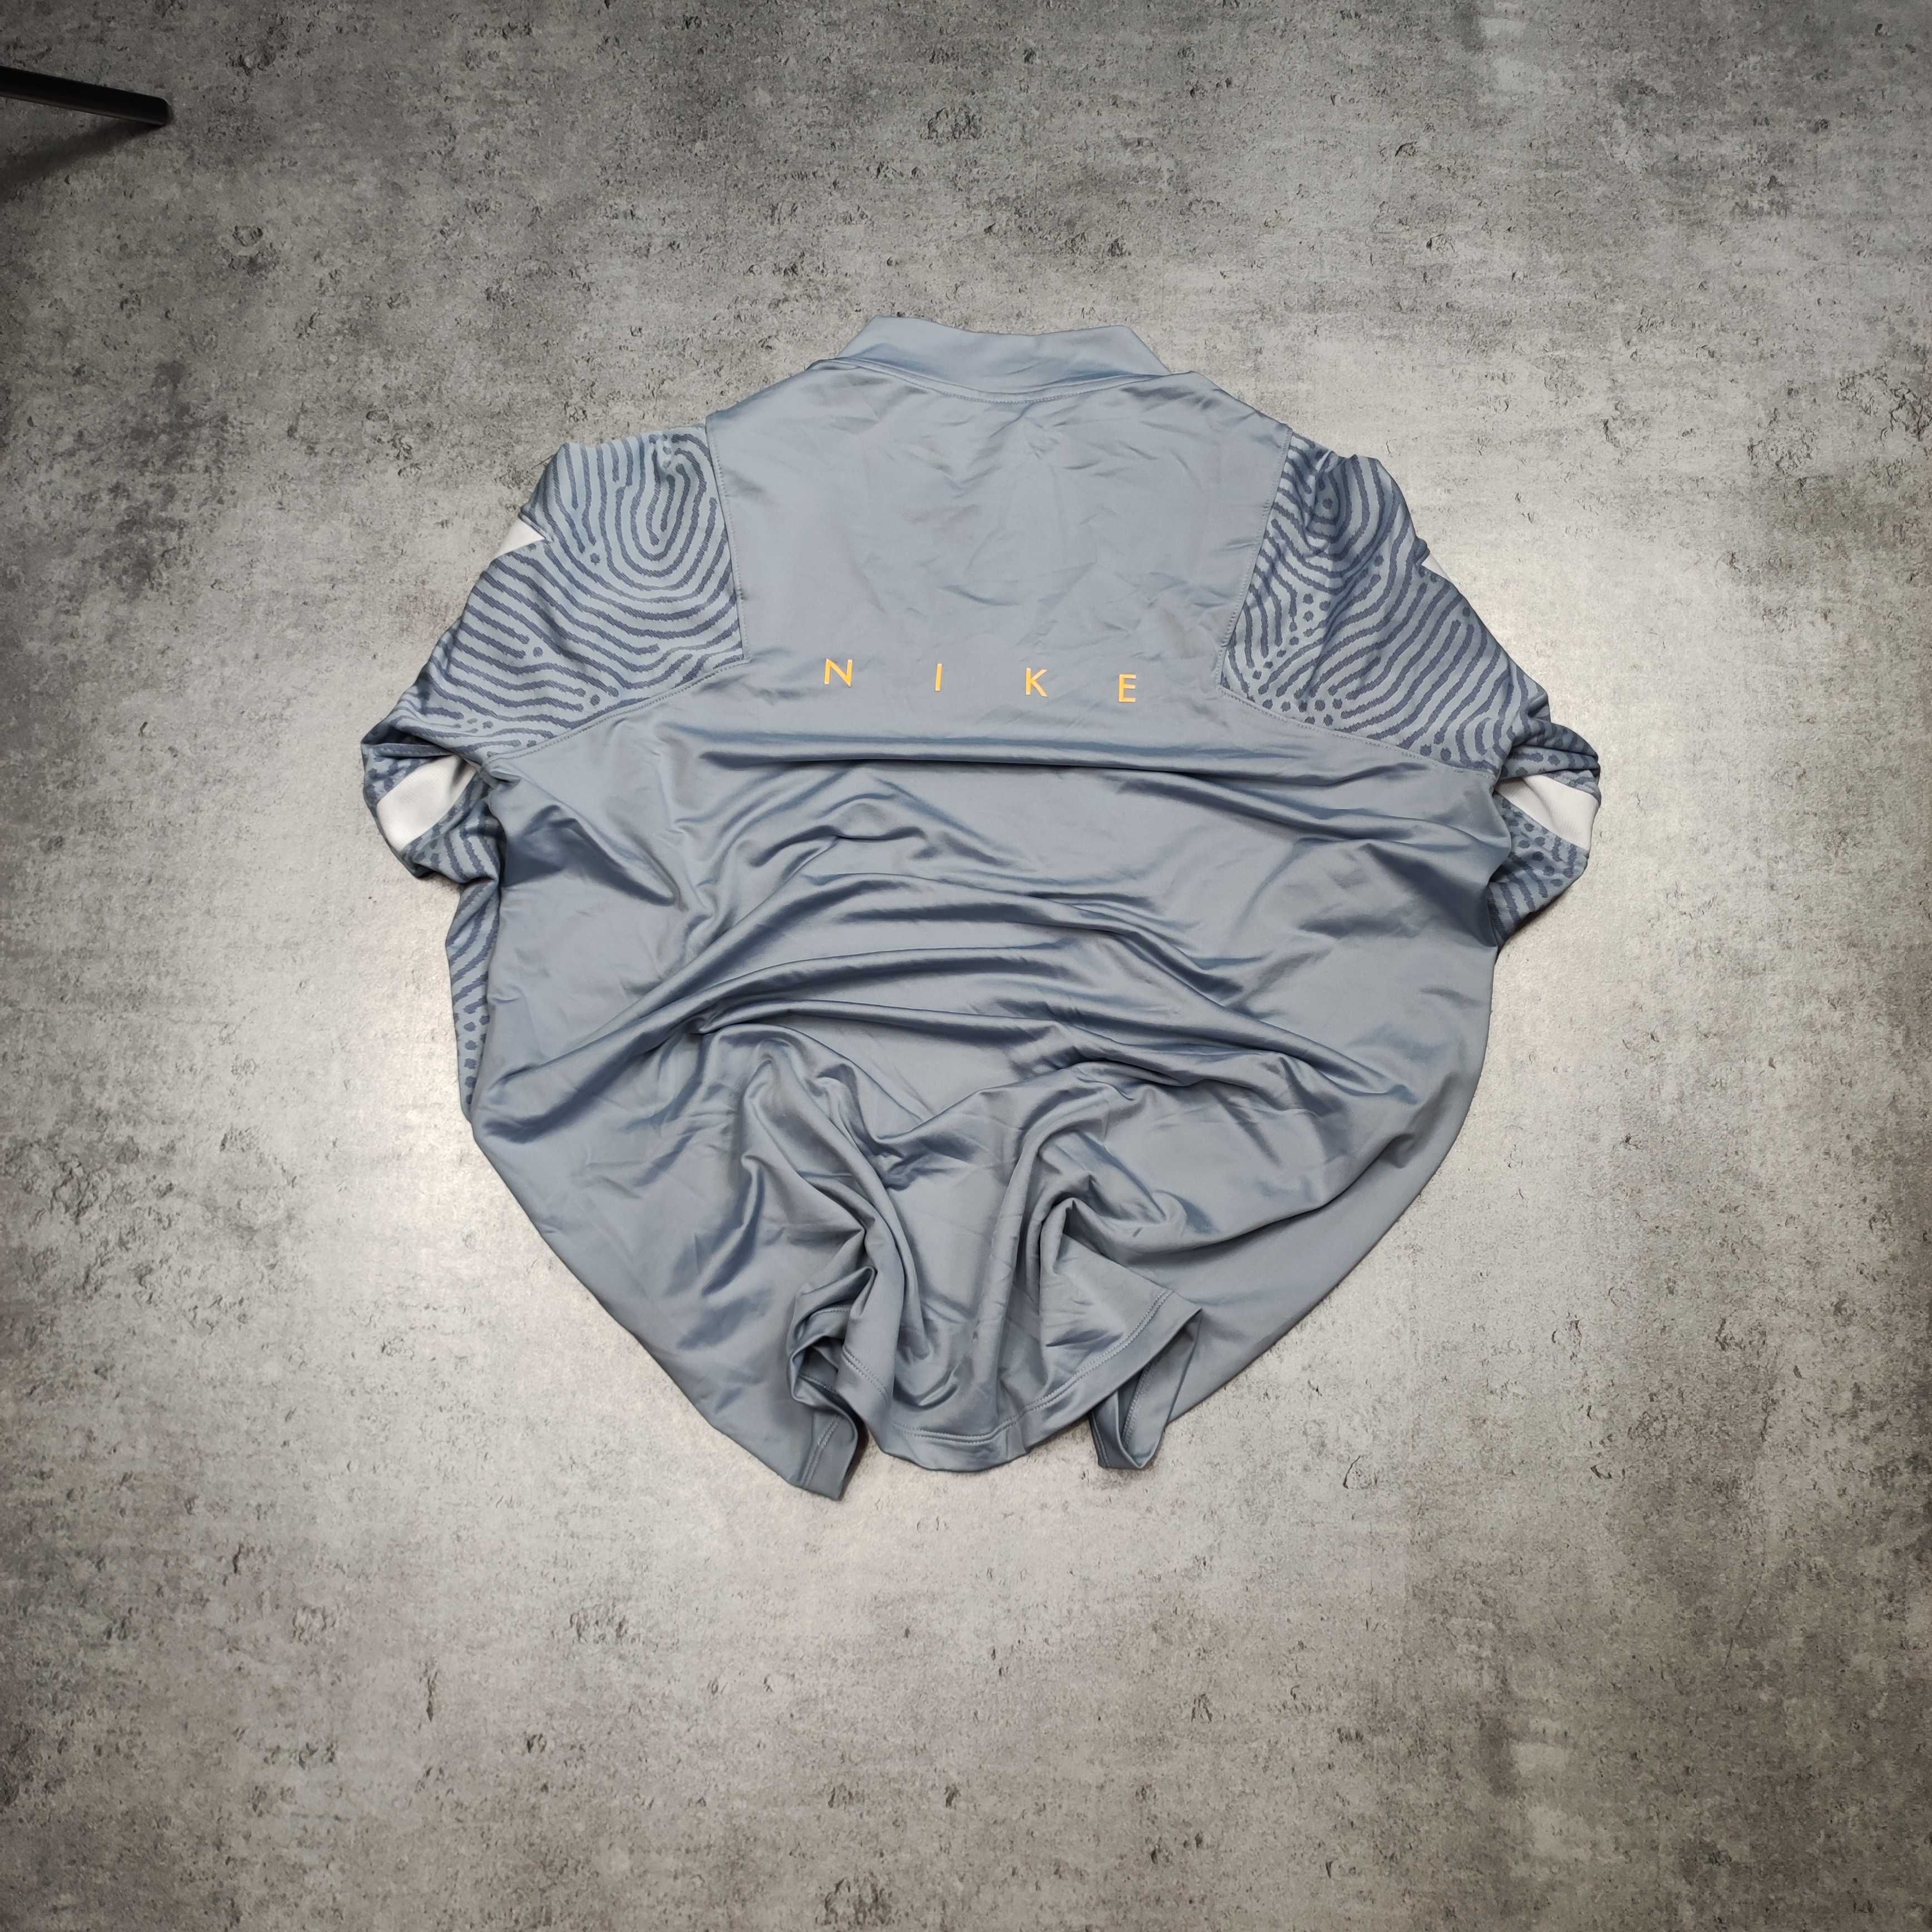 MĘSKA Bluza Śliska Sportowa siłownia Bieg Nike Rozpinana Błękitna Logo